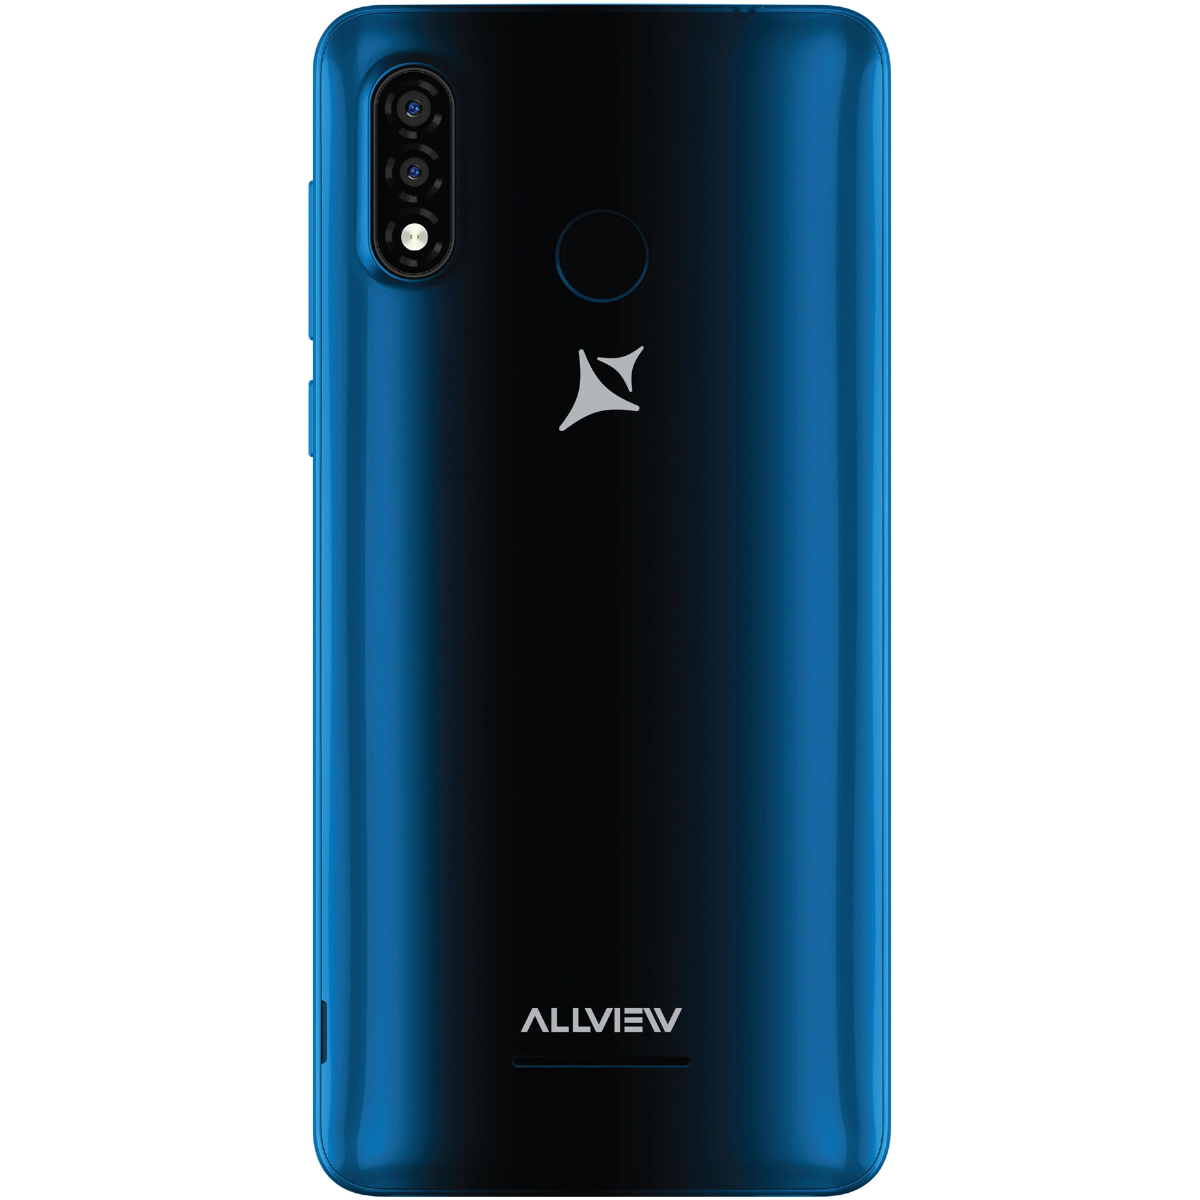 Smartphone Allview A20 Lite, Dual SIM, 32GB, 3G, Blue